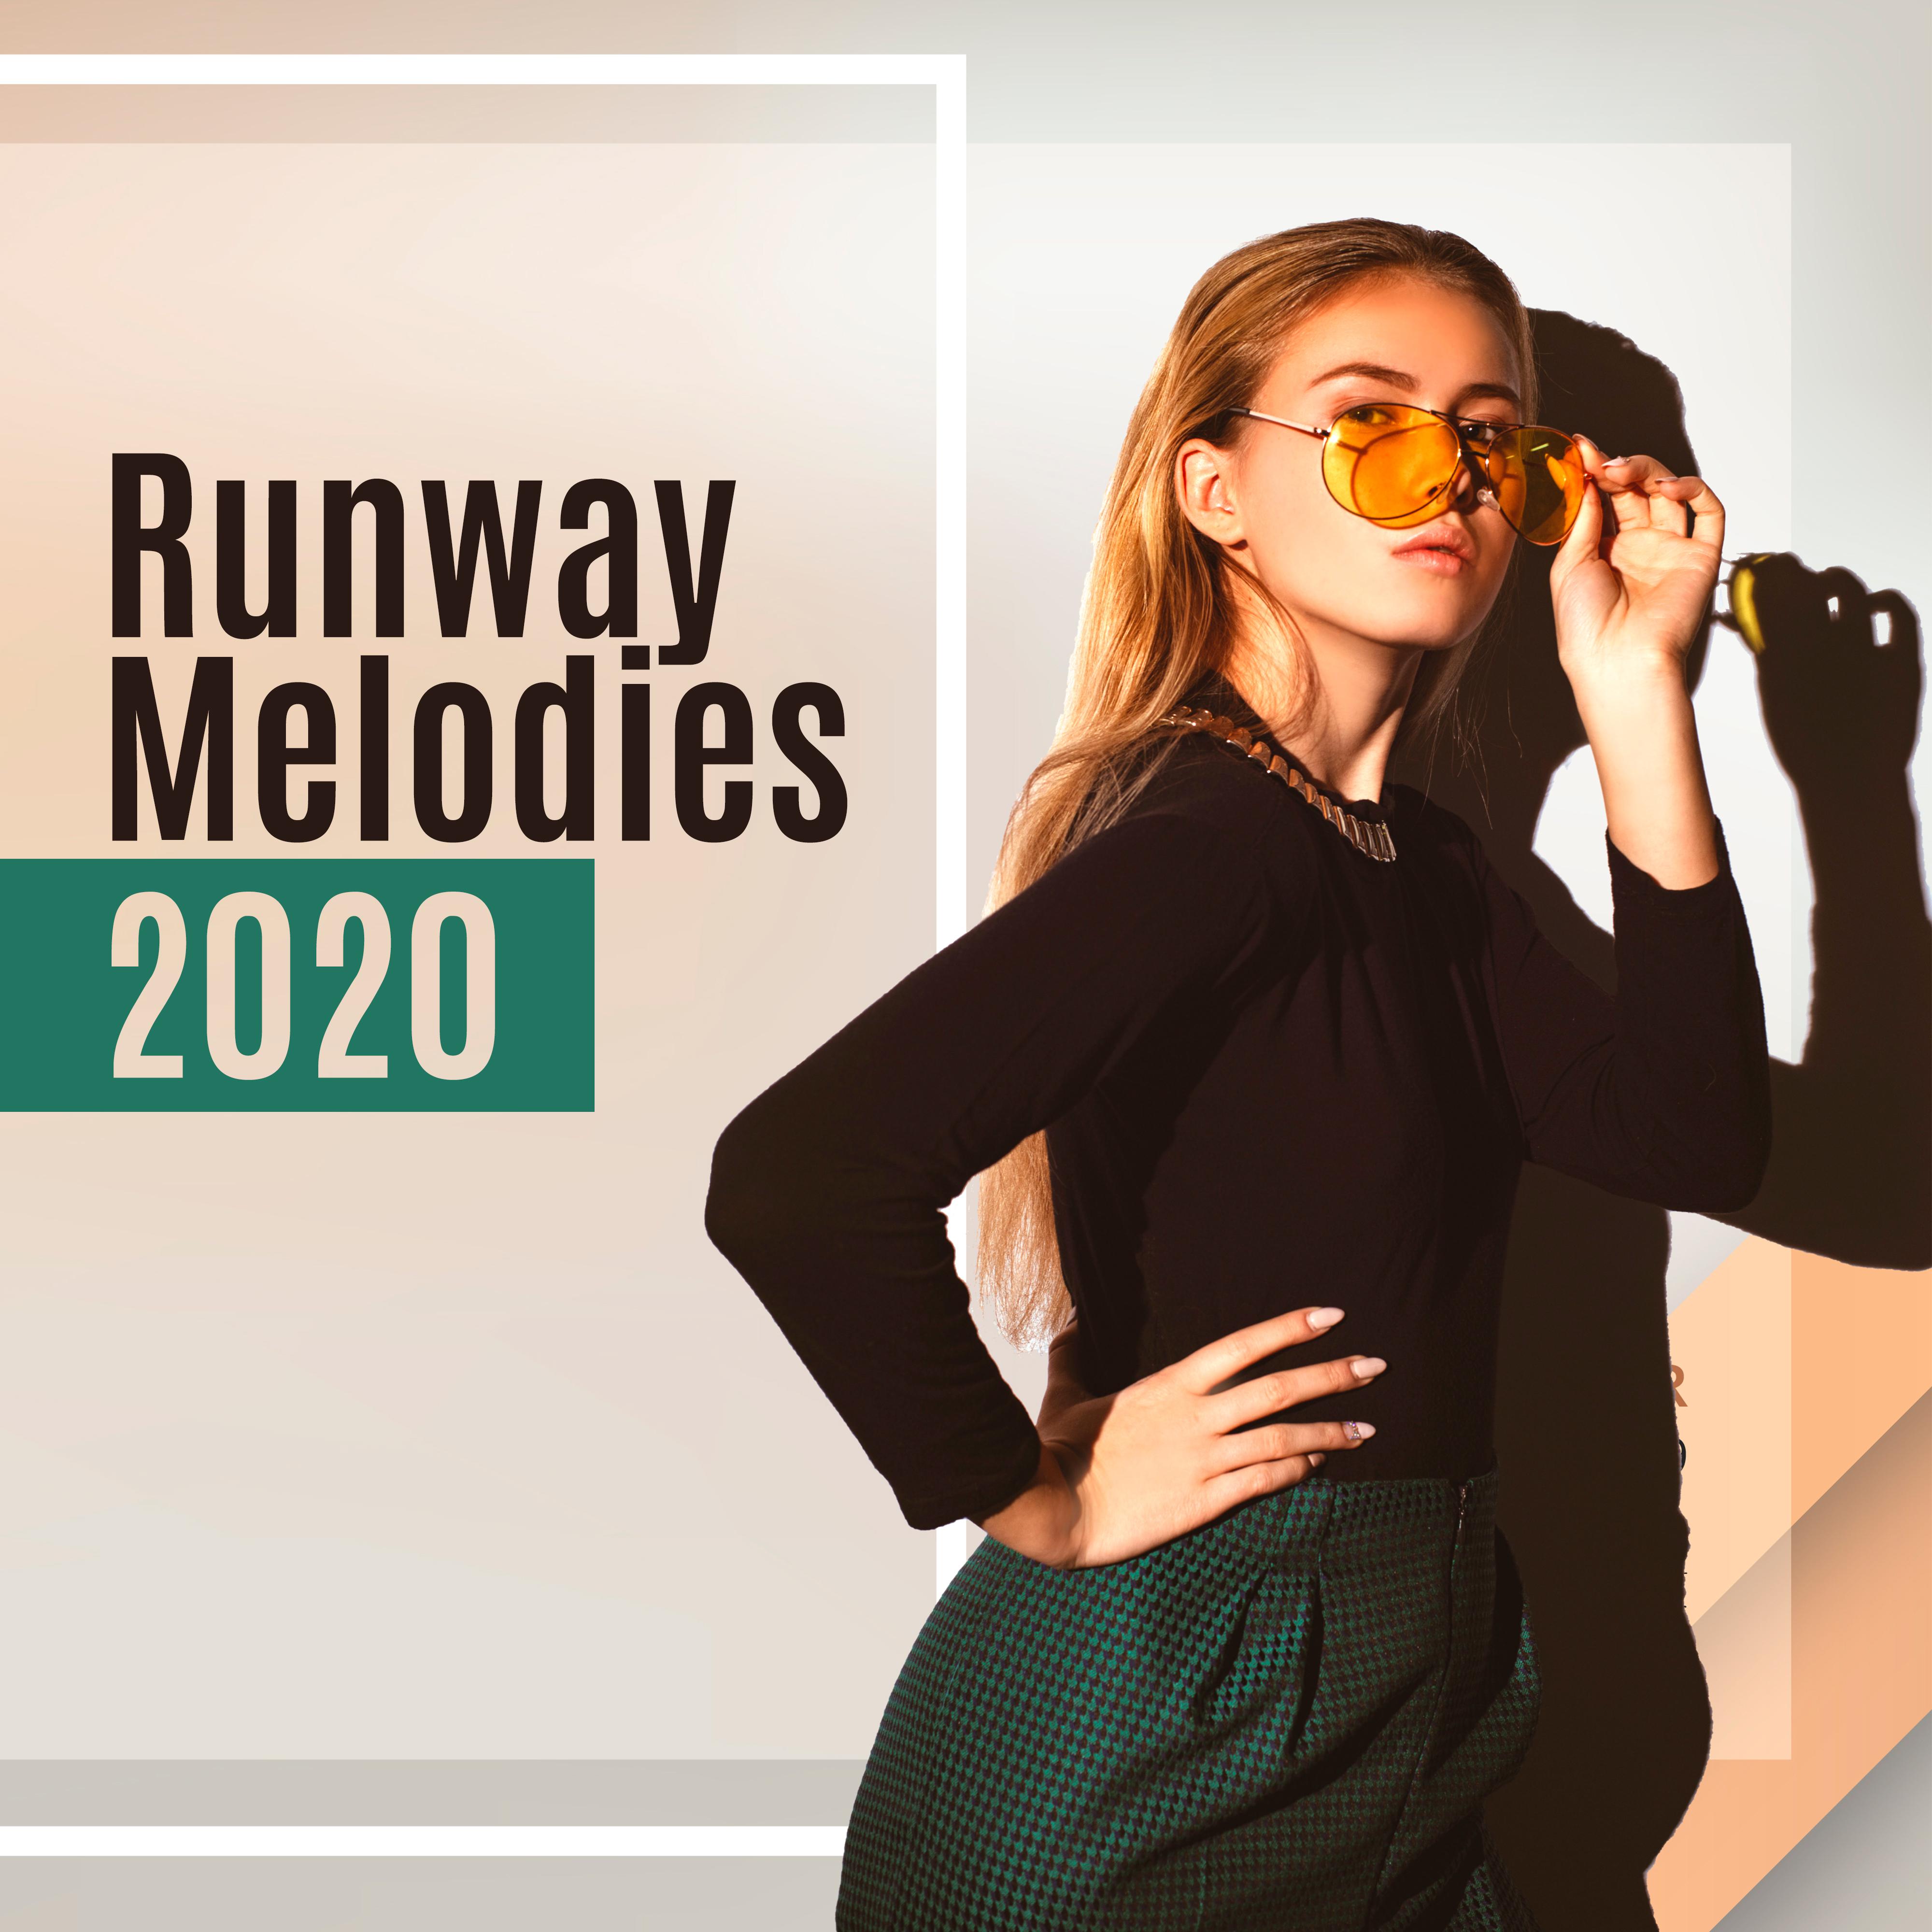 Runway Melodies 2020